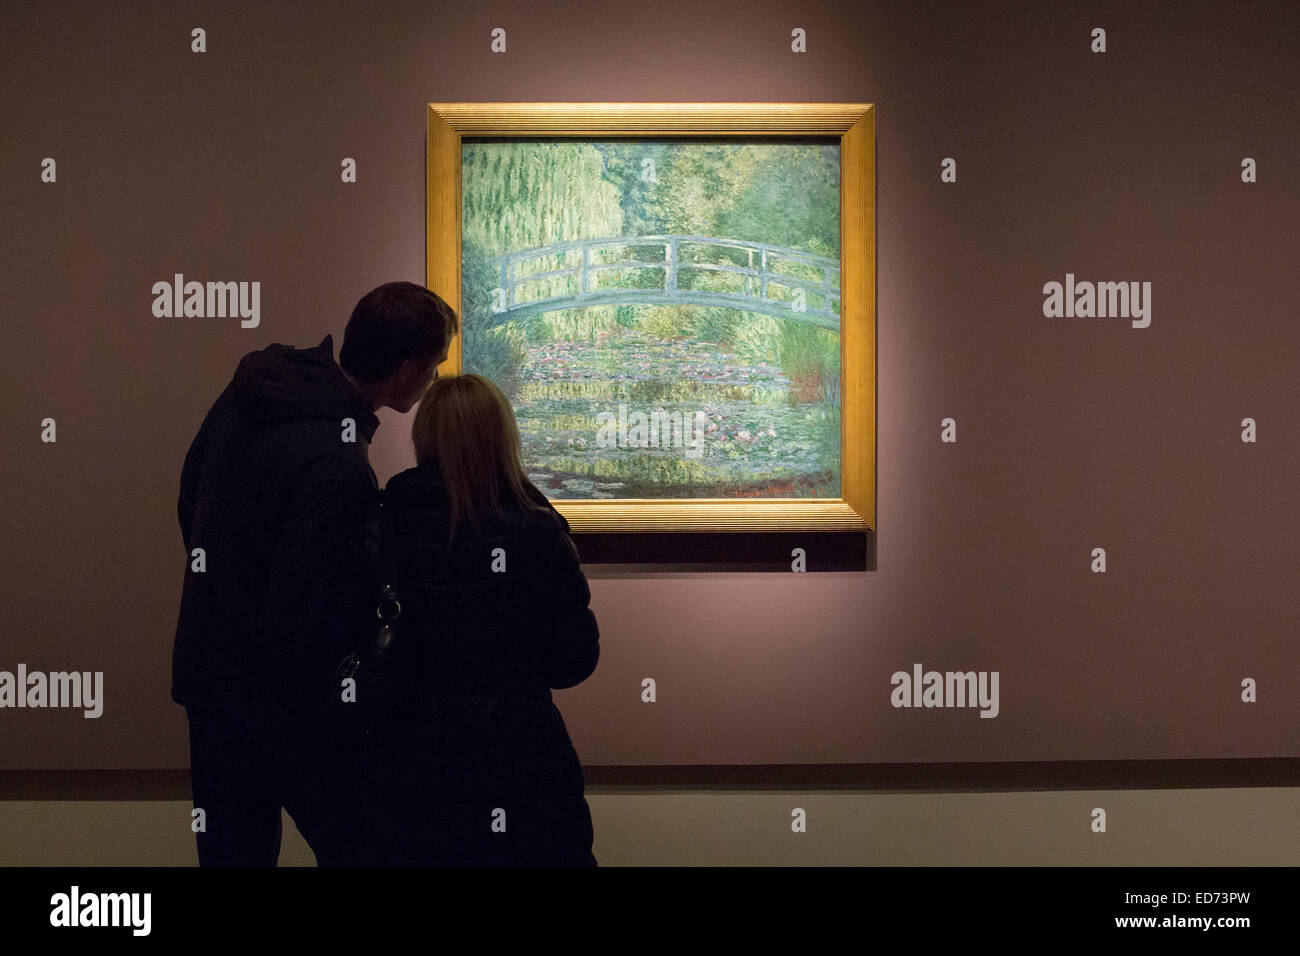 Detroit, Michigan - un couple de Claude Monet études 'Bassin aux nymphéas, Harmonie verte' au Detroit Institute of Arts. Banque D'Images